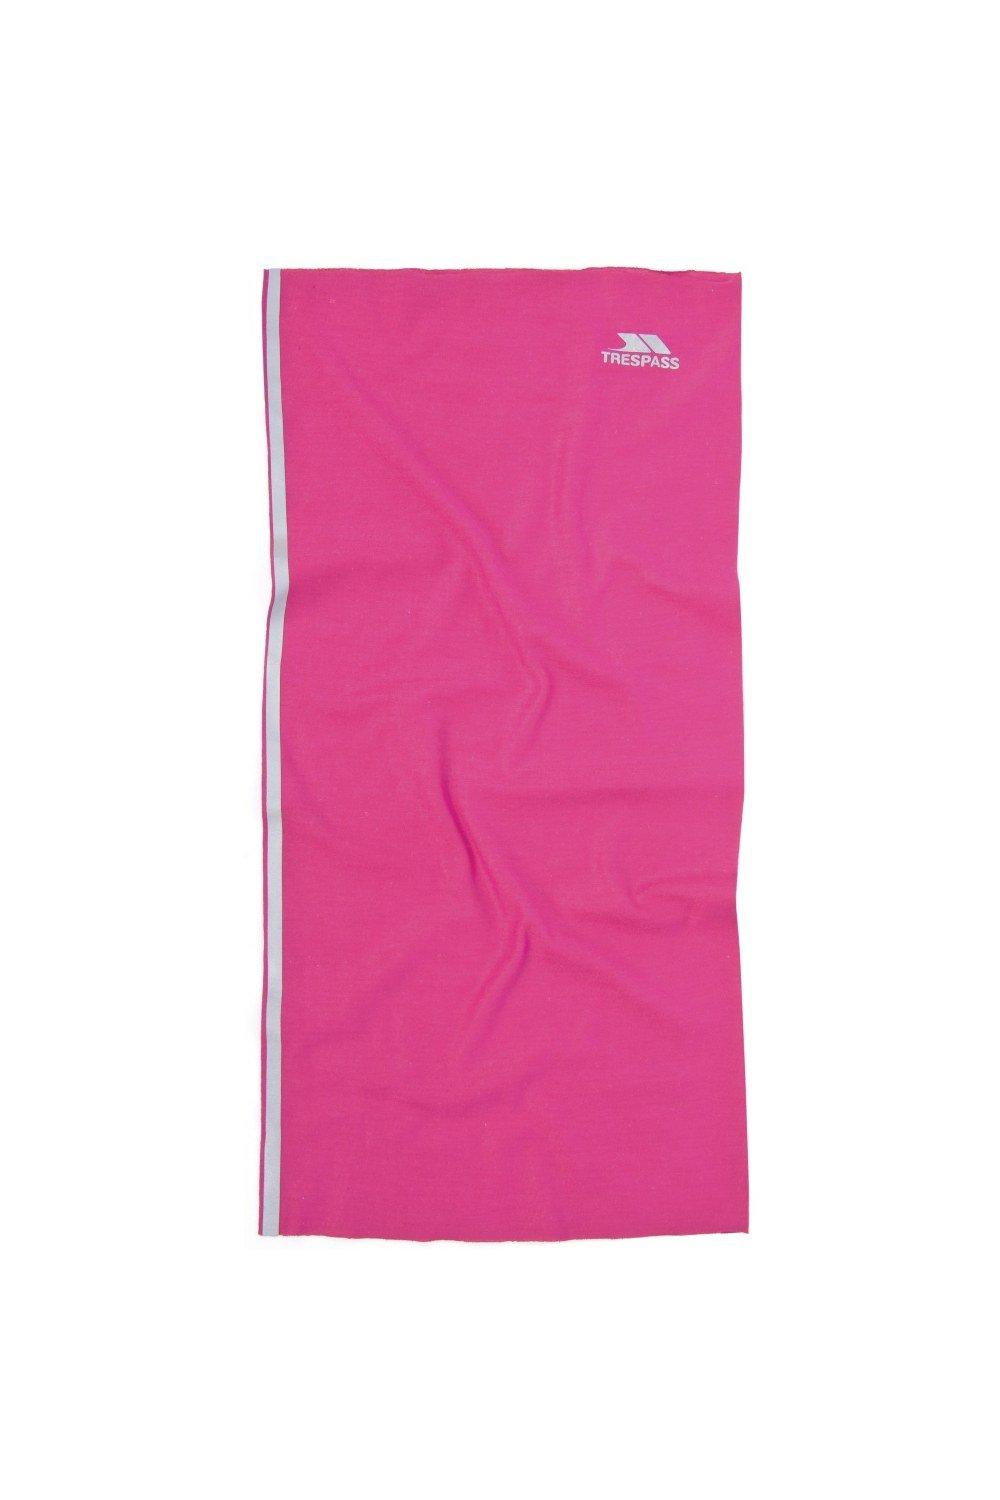 Многофункциональный шейный шарф Tattler Trespass, розовый милый шарф с медведем мягкий утепленный шарф на шею детский шарф шейный платок для детей 0–3 лет